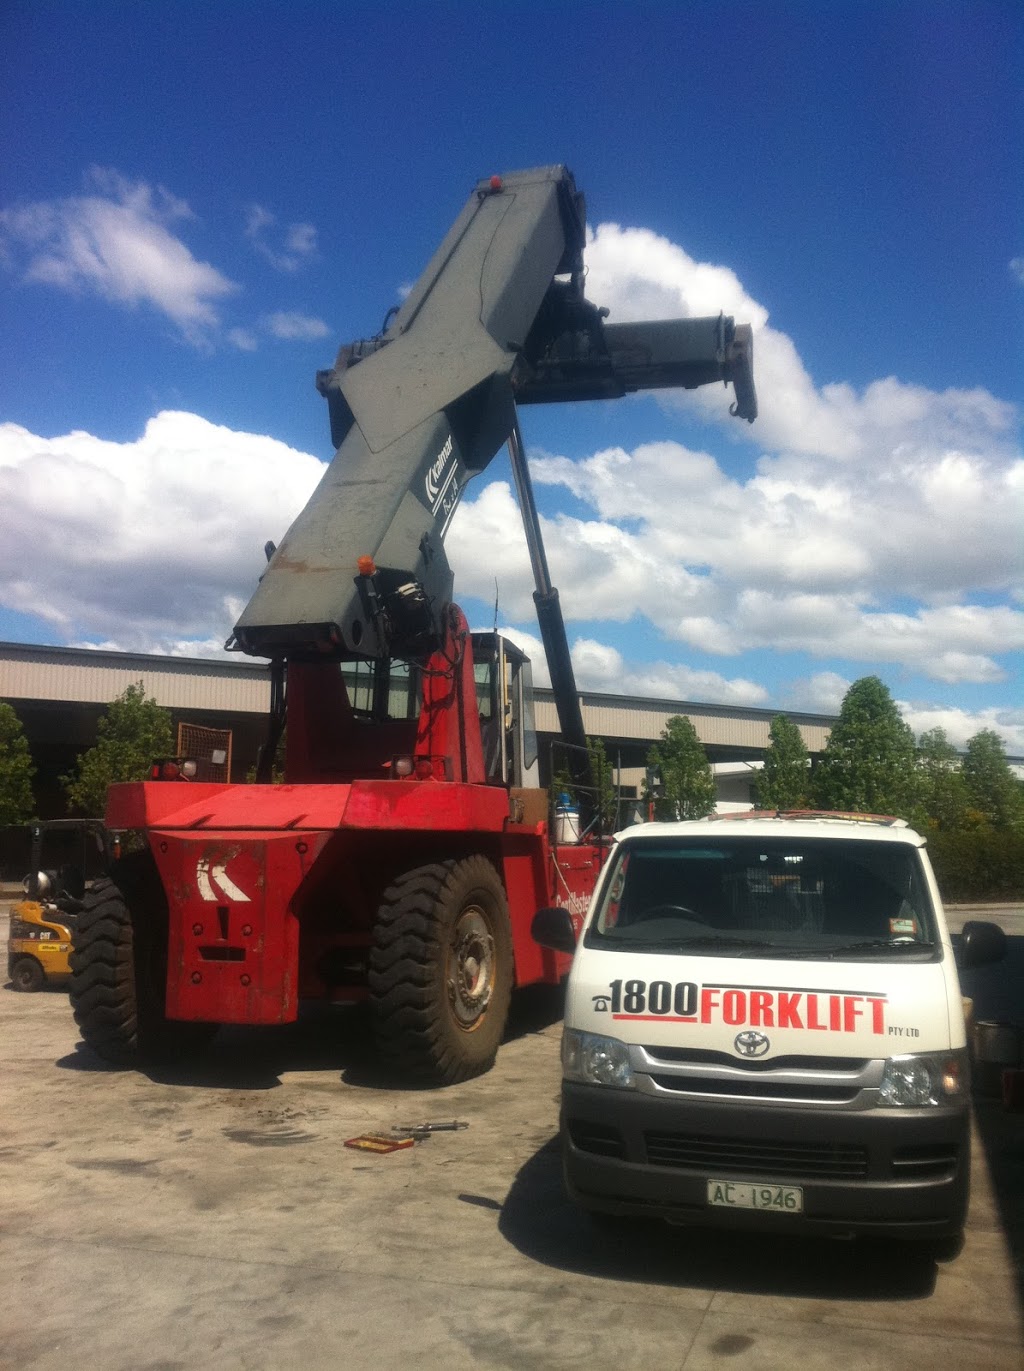 1800 Forklift Pty Ltd & Mainwest Forklift Service Pty Ltd | store | 31 Westside Dr, Laverton North VIC 3026, Australia | 0393144744 OR +61 3 9314 4744